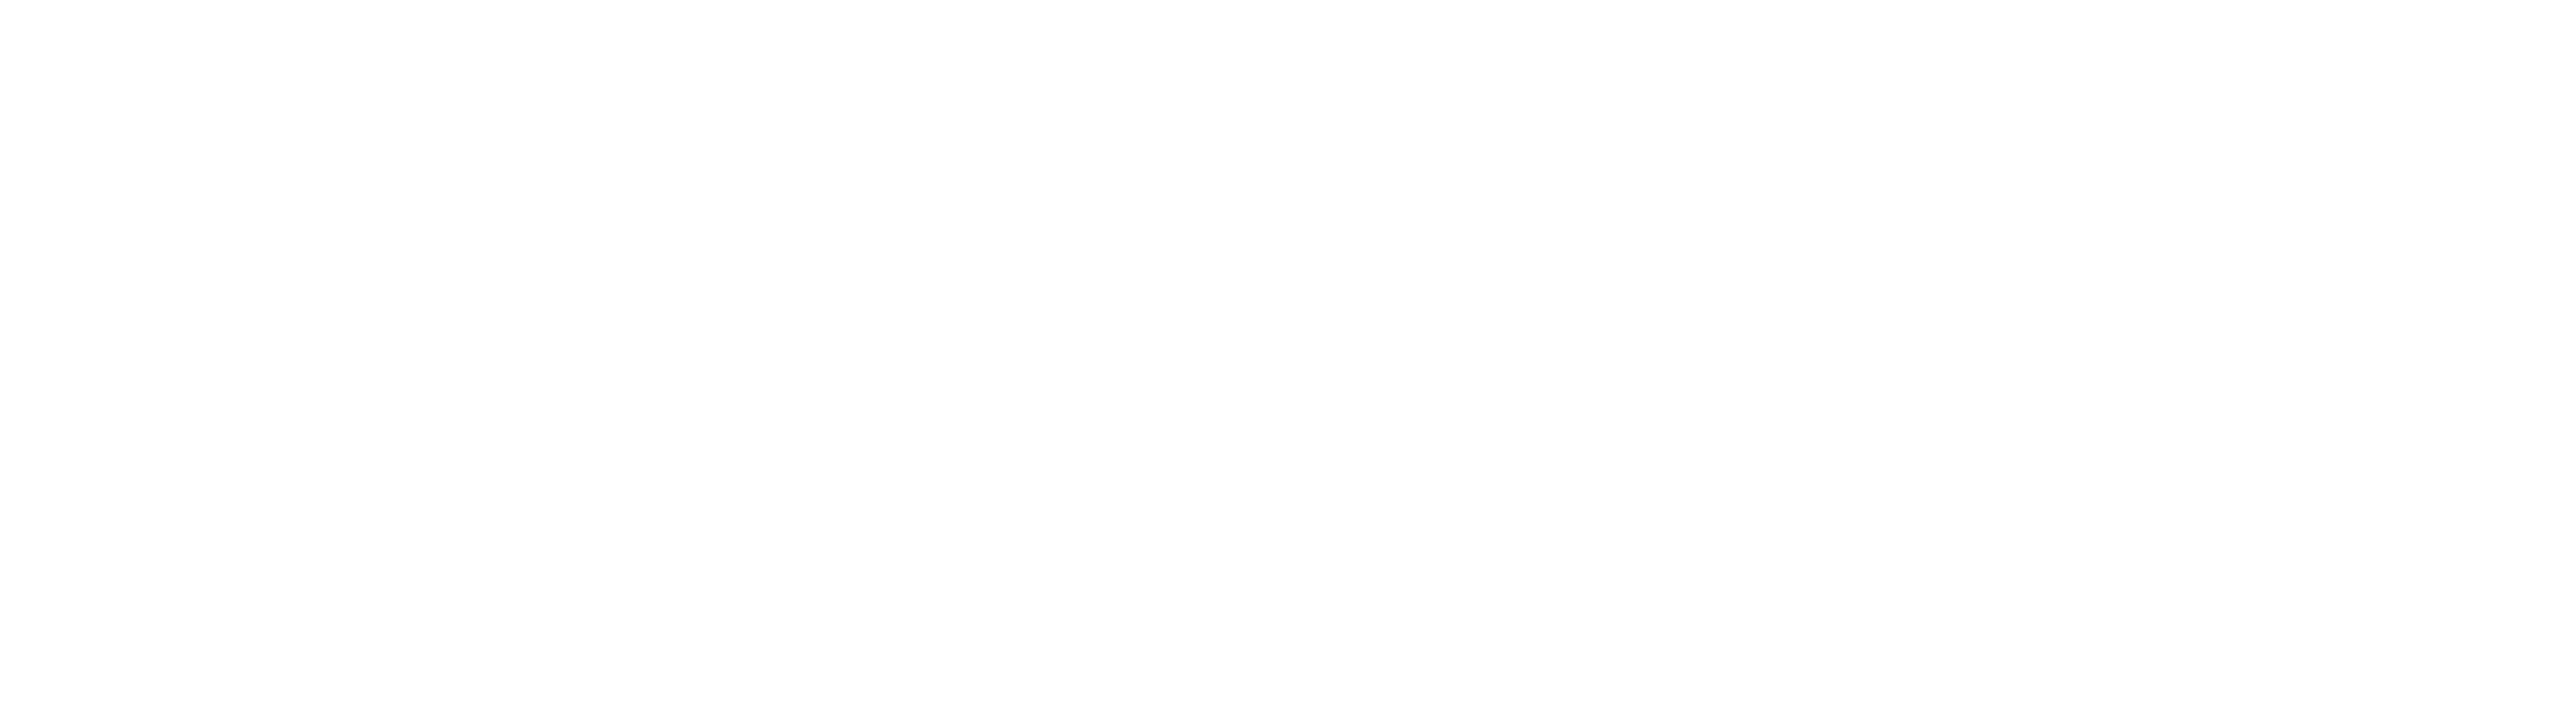 FNTP Logo